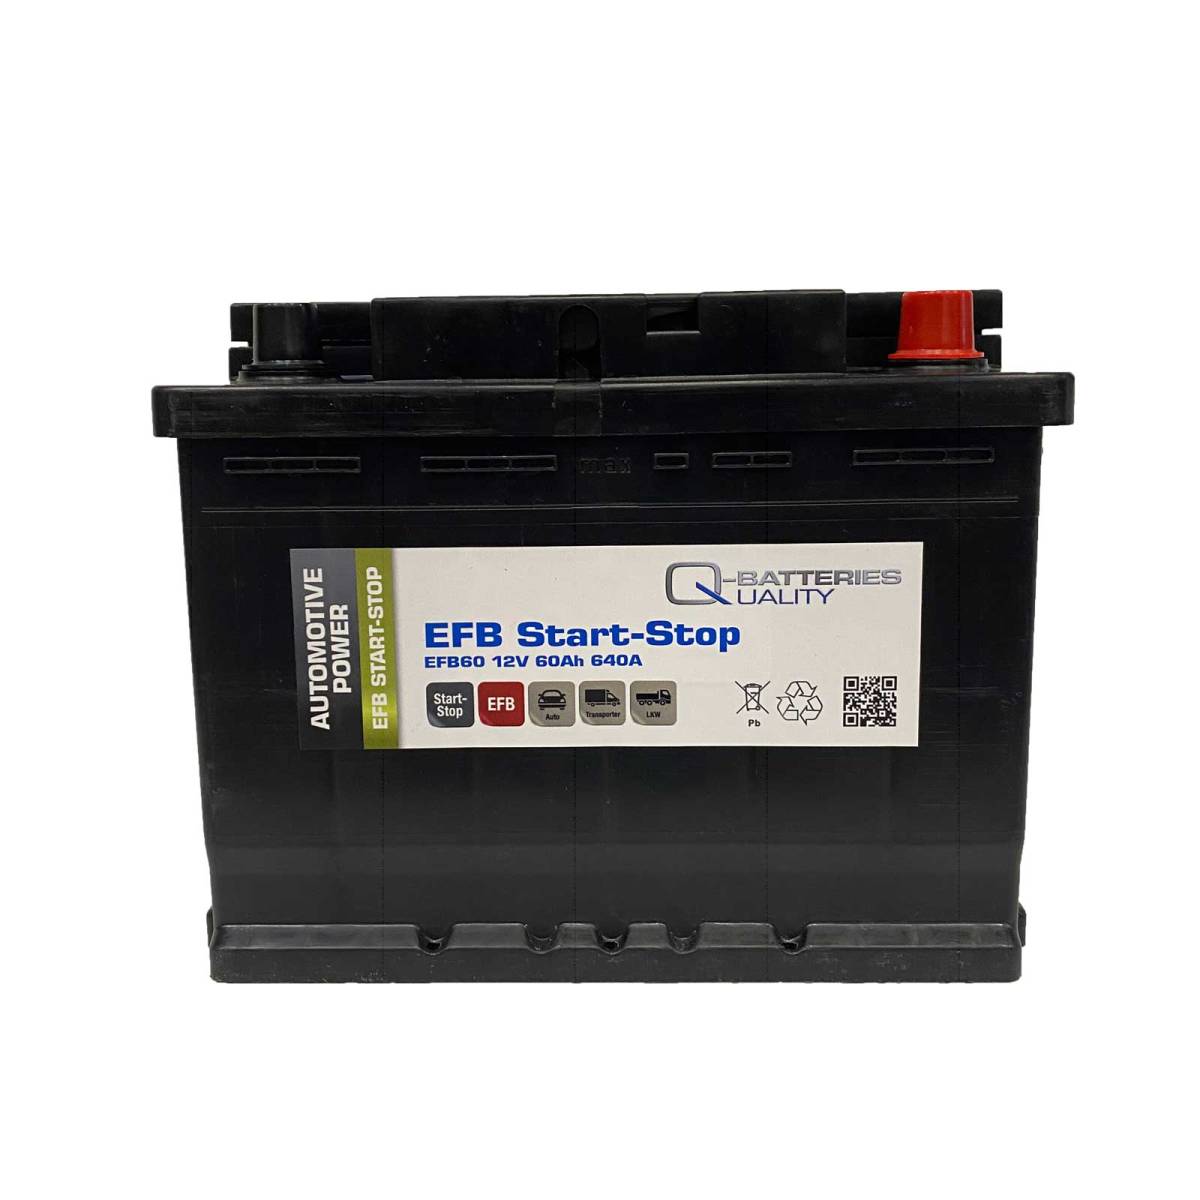 Q-Batteries Start-Stop EFB Autobatterie EFB60 12V 60Ah 640A